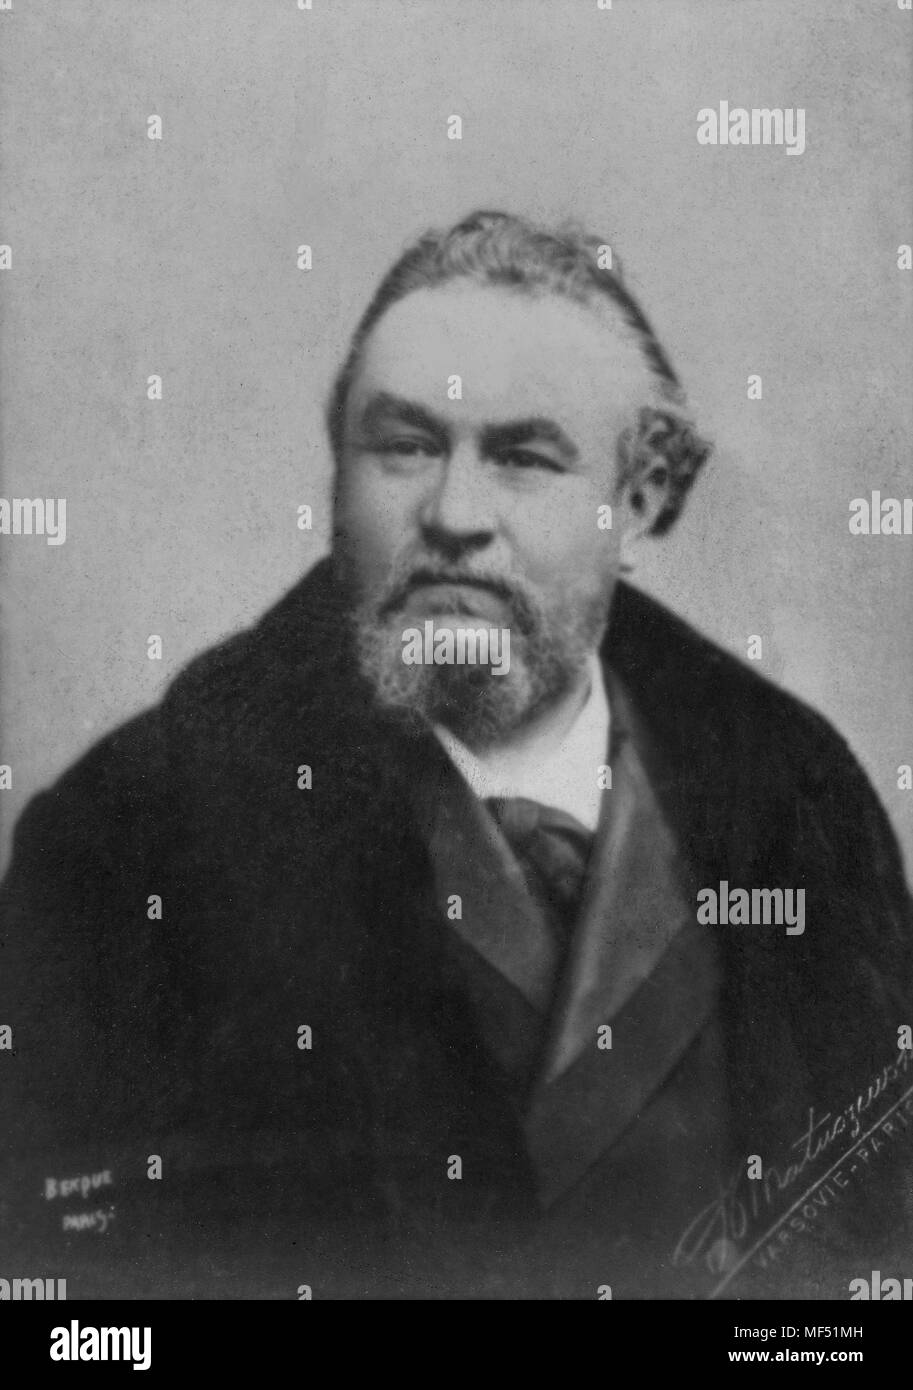 Ritratto di Emile Bergerat alias Caliban ( 1845 - 1923 ) e lo scrittore francese , poeta, critico drammatico , reporter - Fotografia anonimo Foto Stock